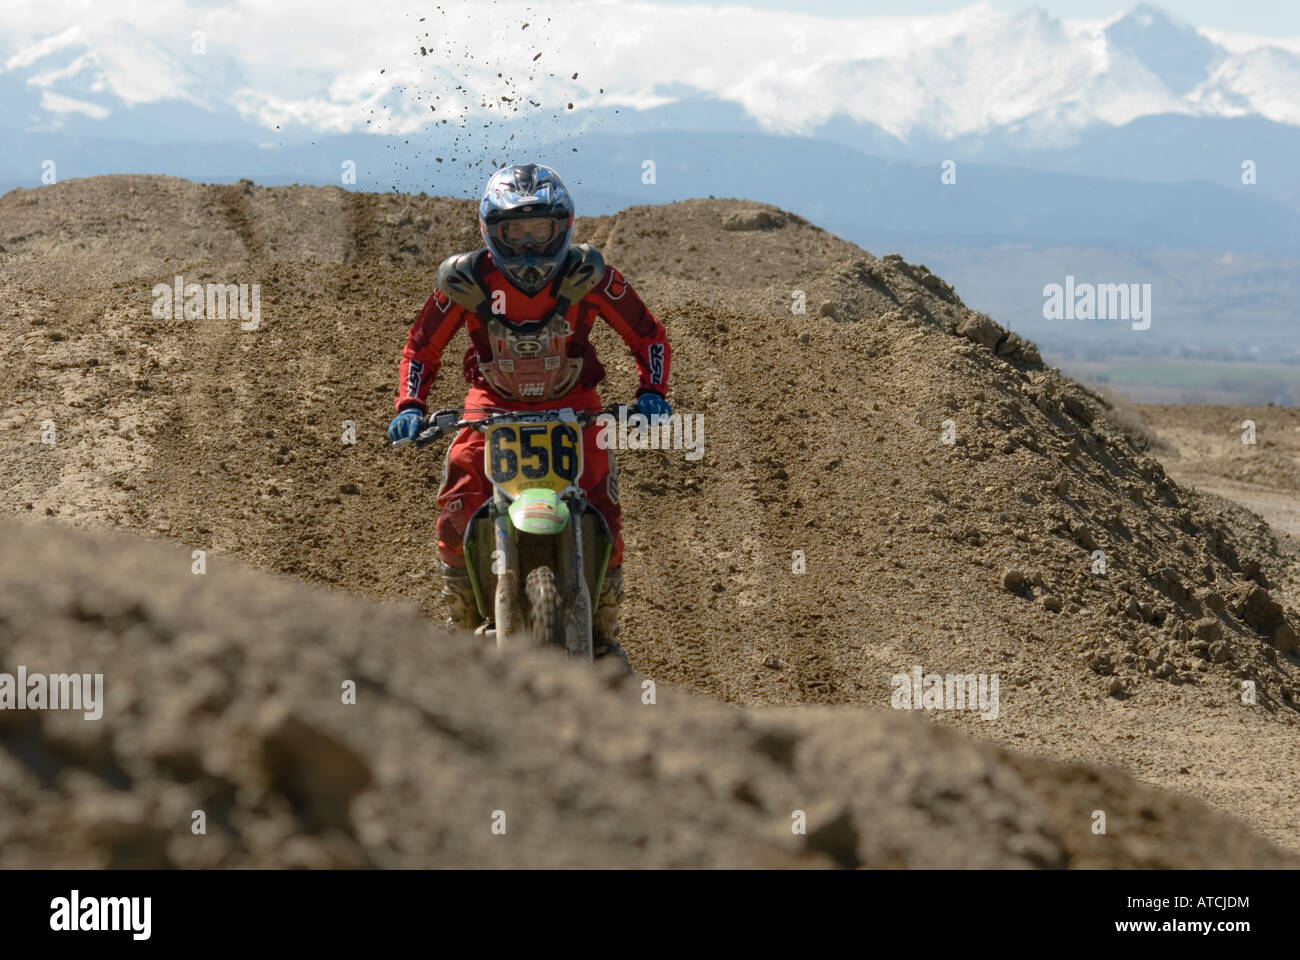 Dirt Bike bei Motocross-Strecke Stockfoto